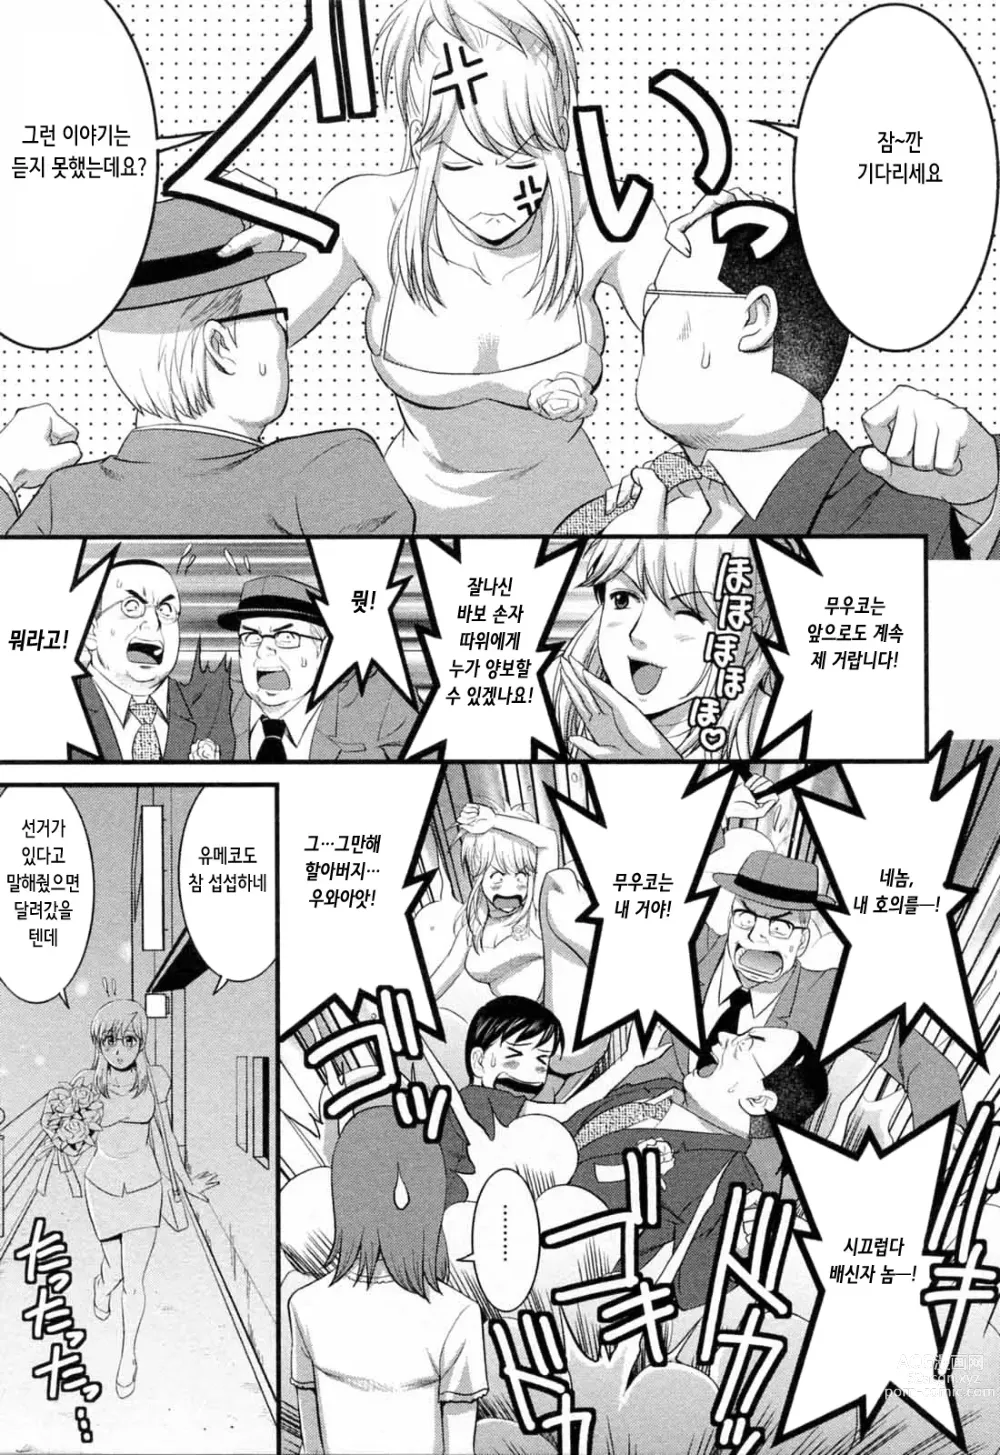 Page 208 of manga 파견사원 무우코 씨 2